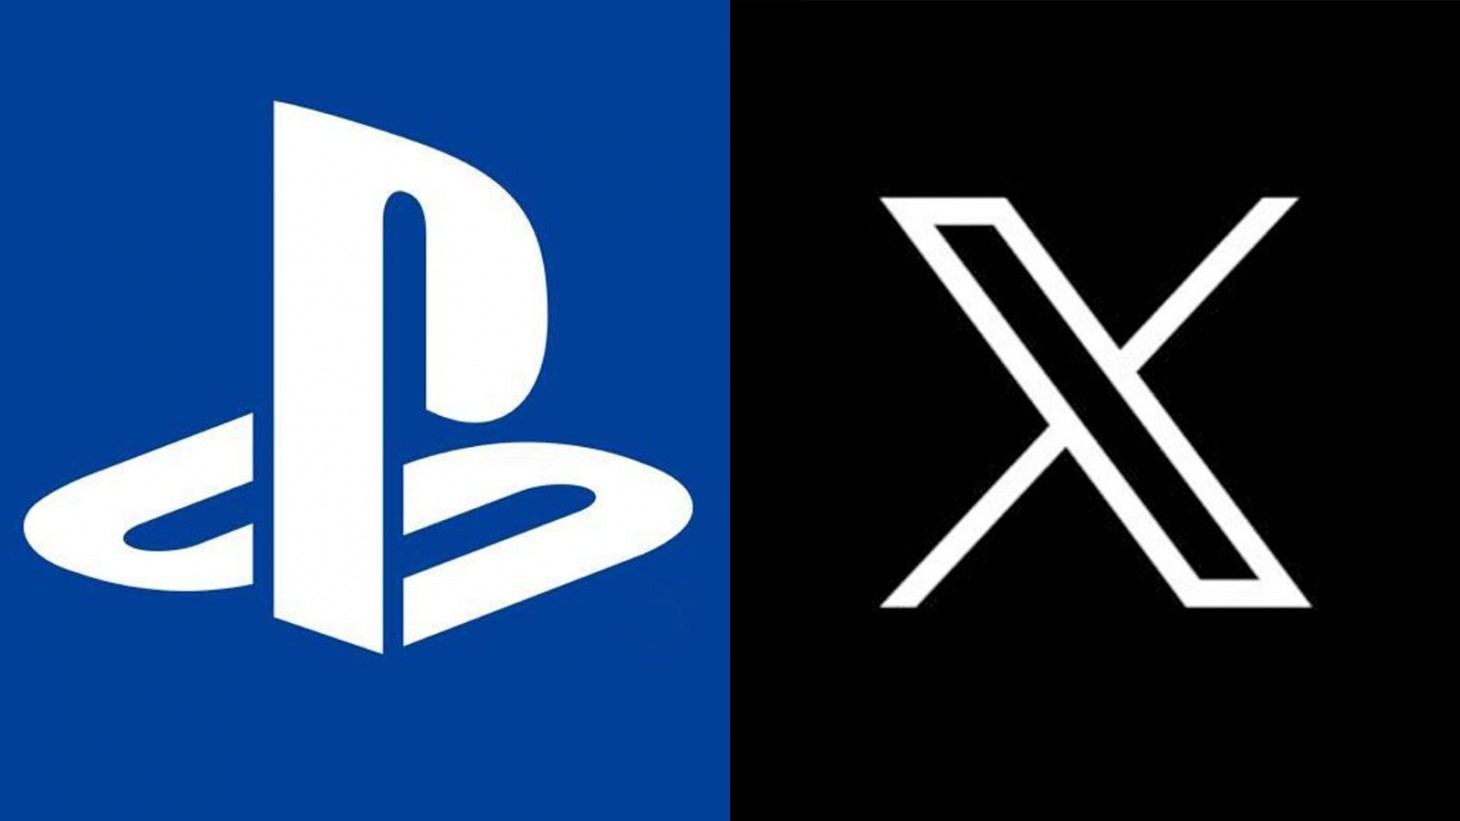 PlayStation beendet nächste Woche die Twitter/X-Integration